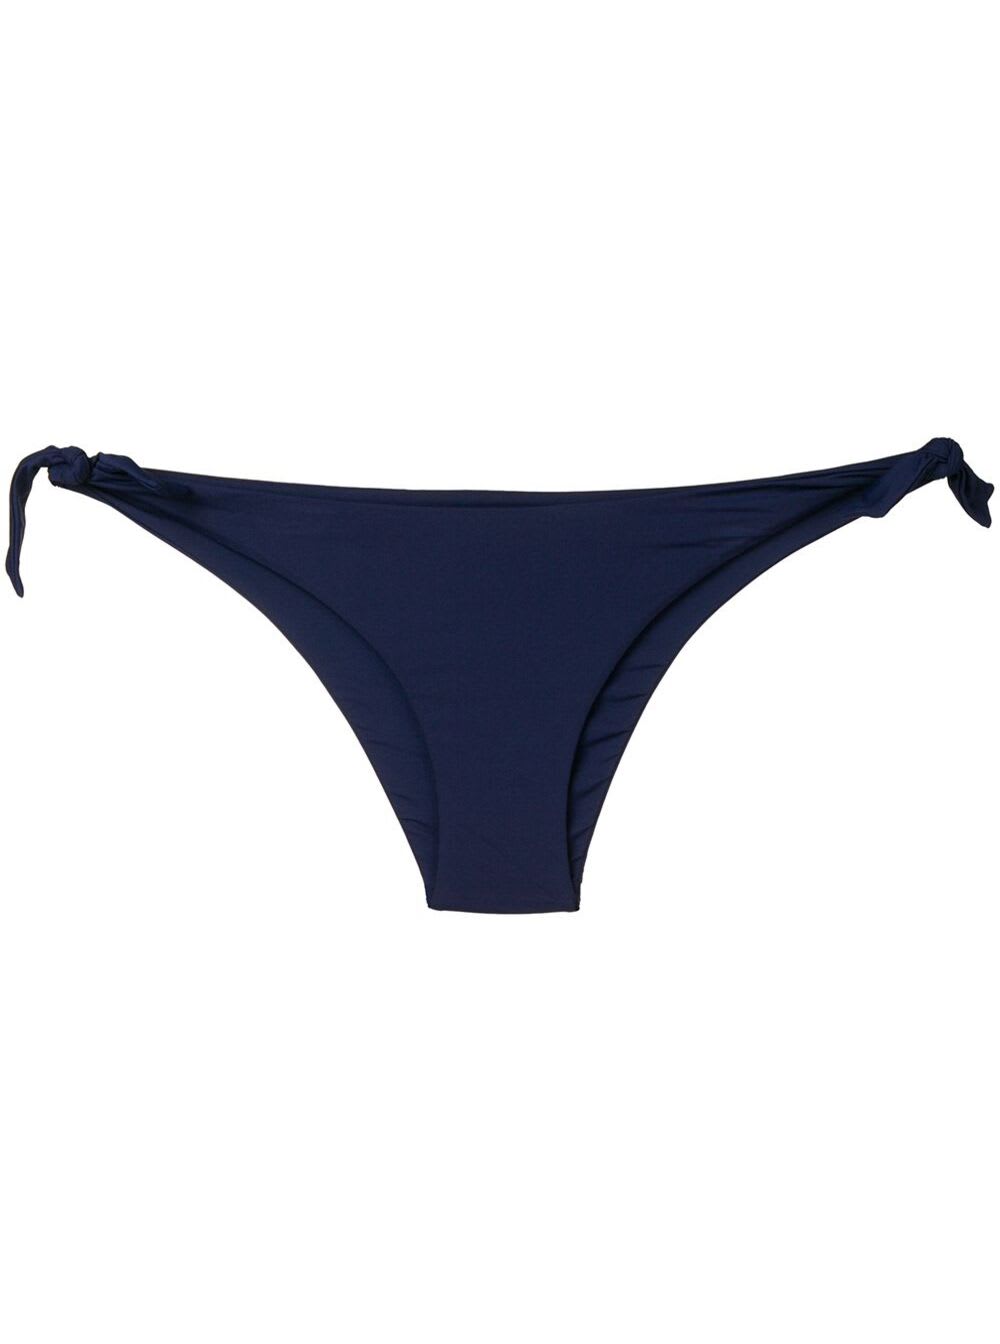 Fisico - Cristina Ferrari Fisico Womans Technical Fabric Bikini Briefs With Logo